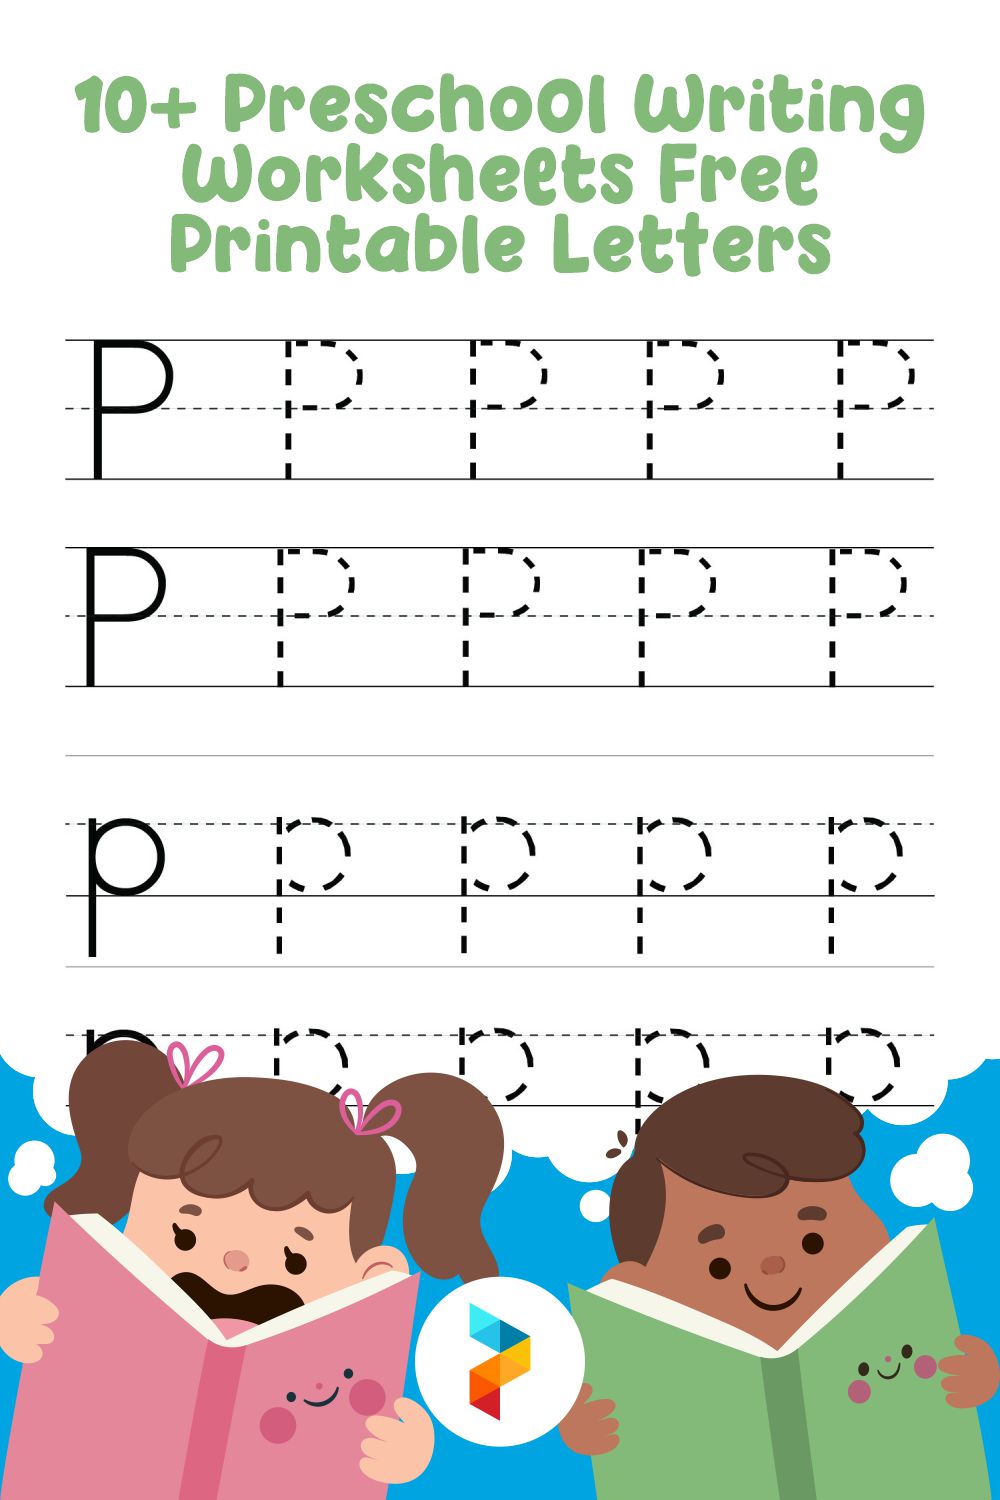 Preschool Writing Worksheets Printable Letters